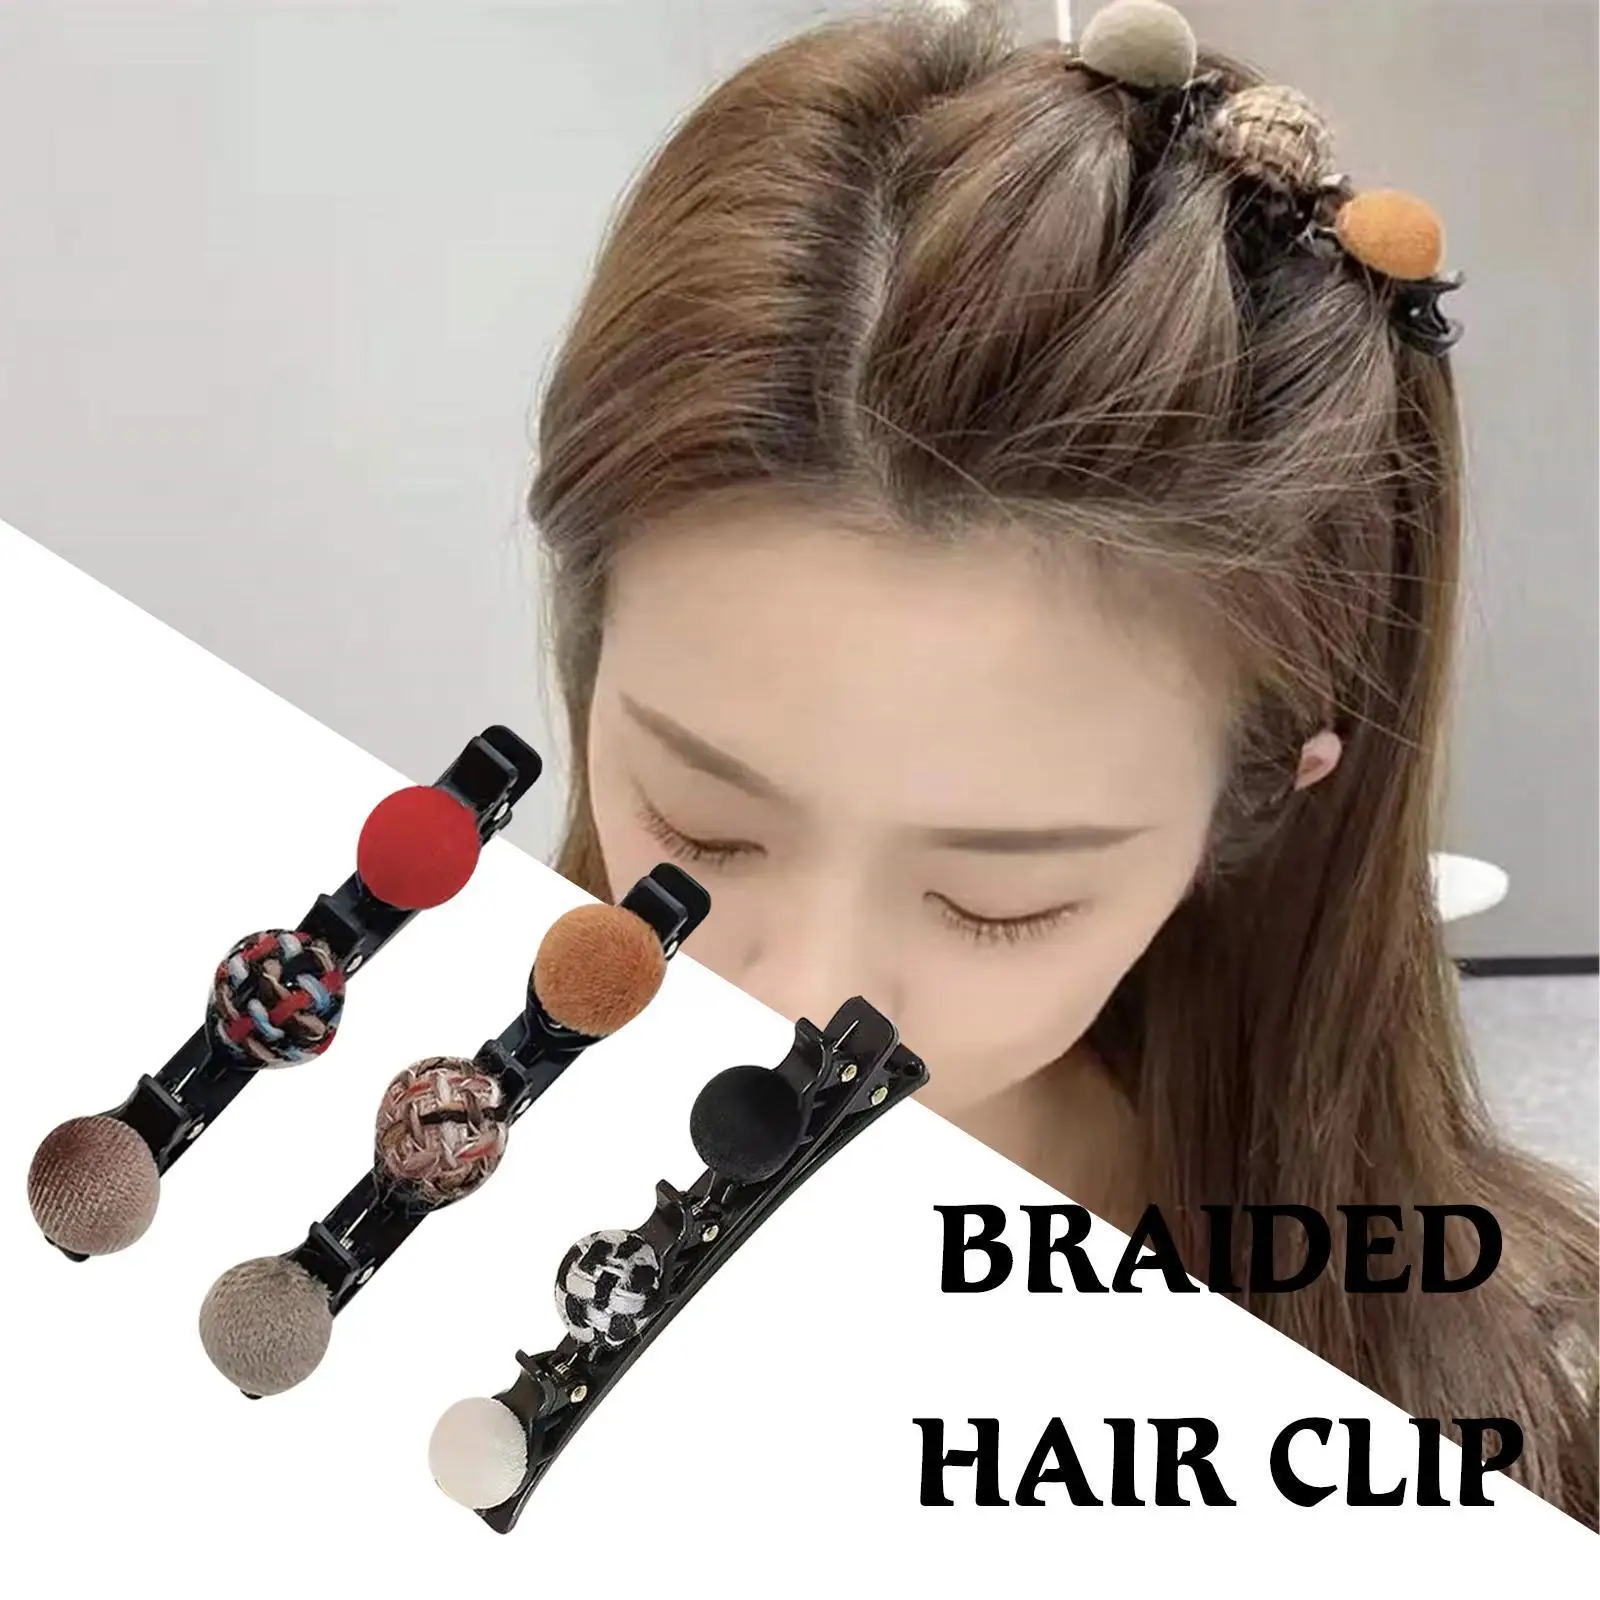 

Flocked Bangs Hair Clip Black Headwear Women Cute Barrettes Alice Braided Hairgrip Accessories Fashion Hairpins Hair O9k5